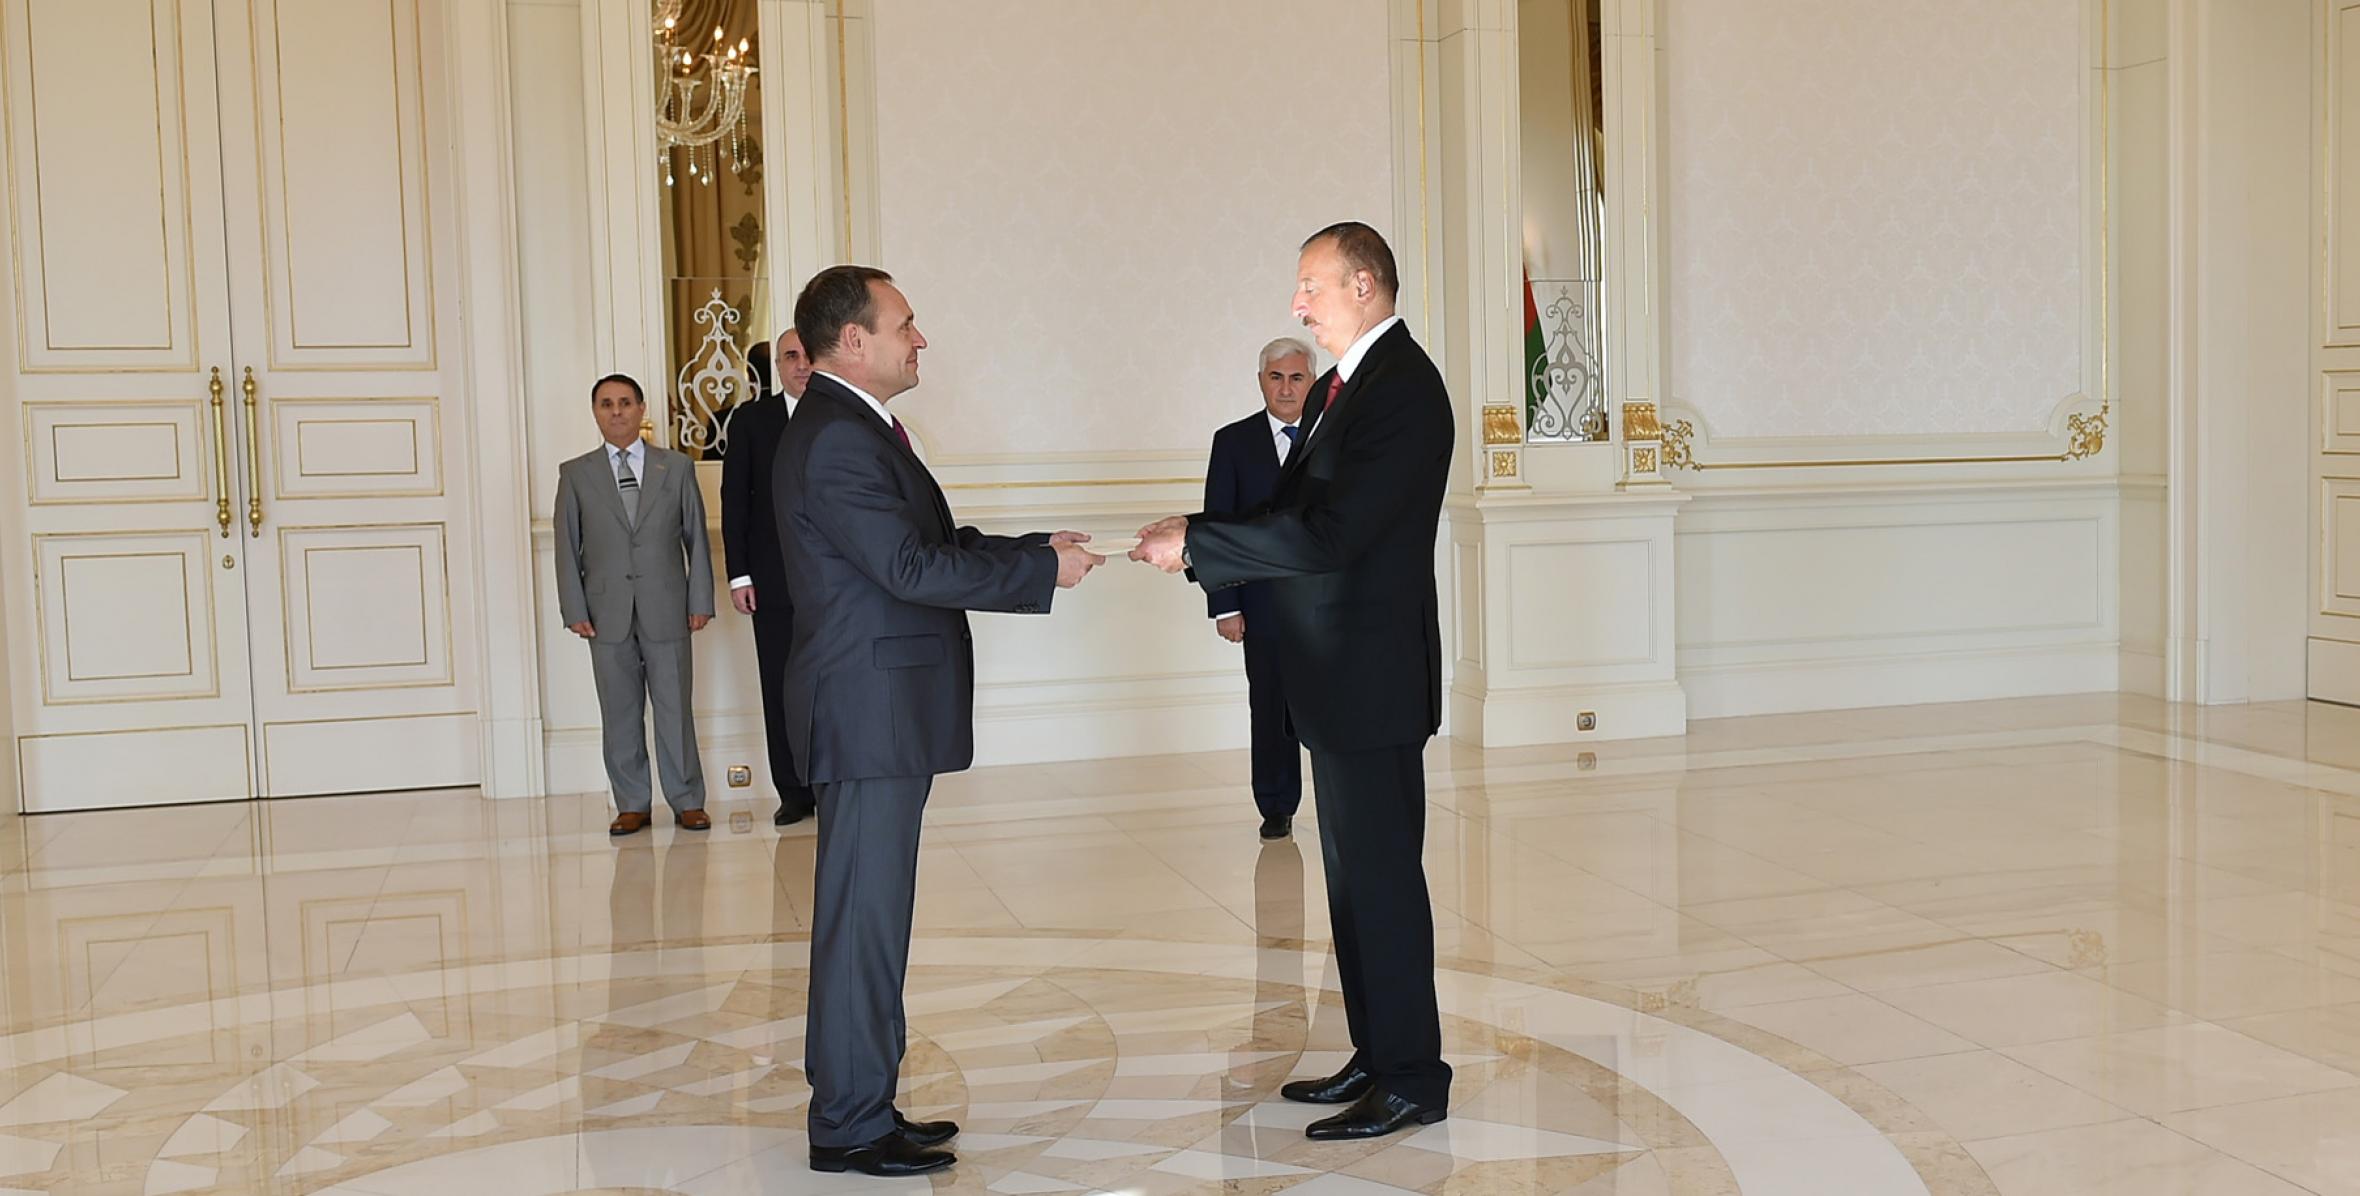 Ильхам Алиев принял верительные грамоты новоназначенного посла Латвии в Азербайджане